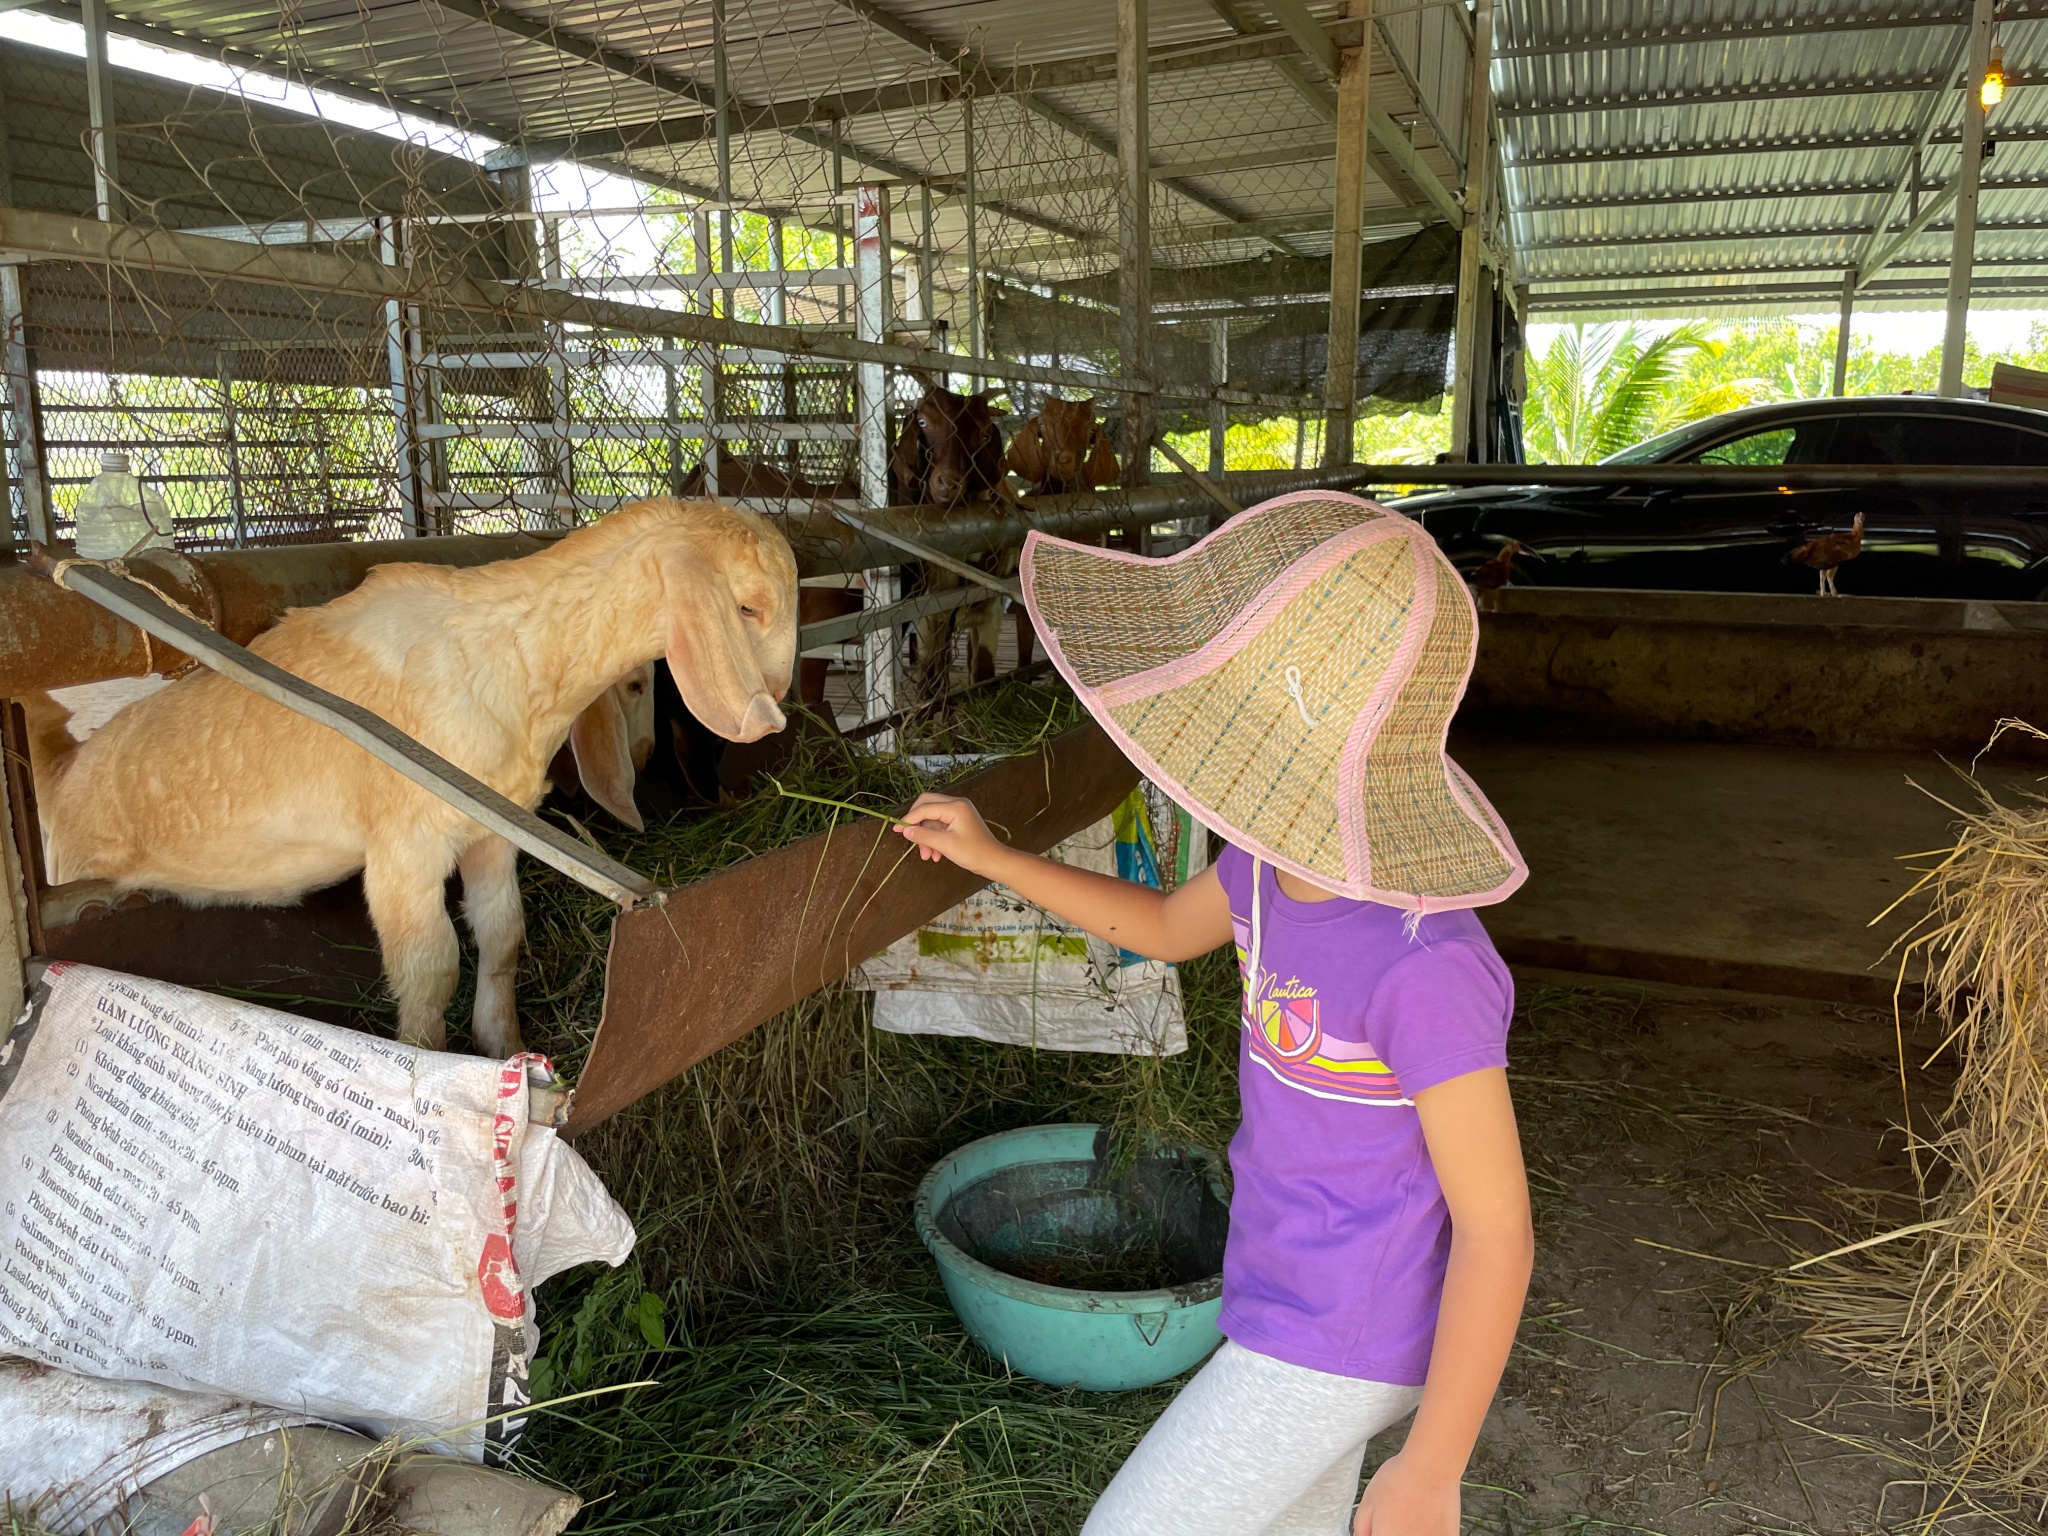 Feeding goat 2.jpg